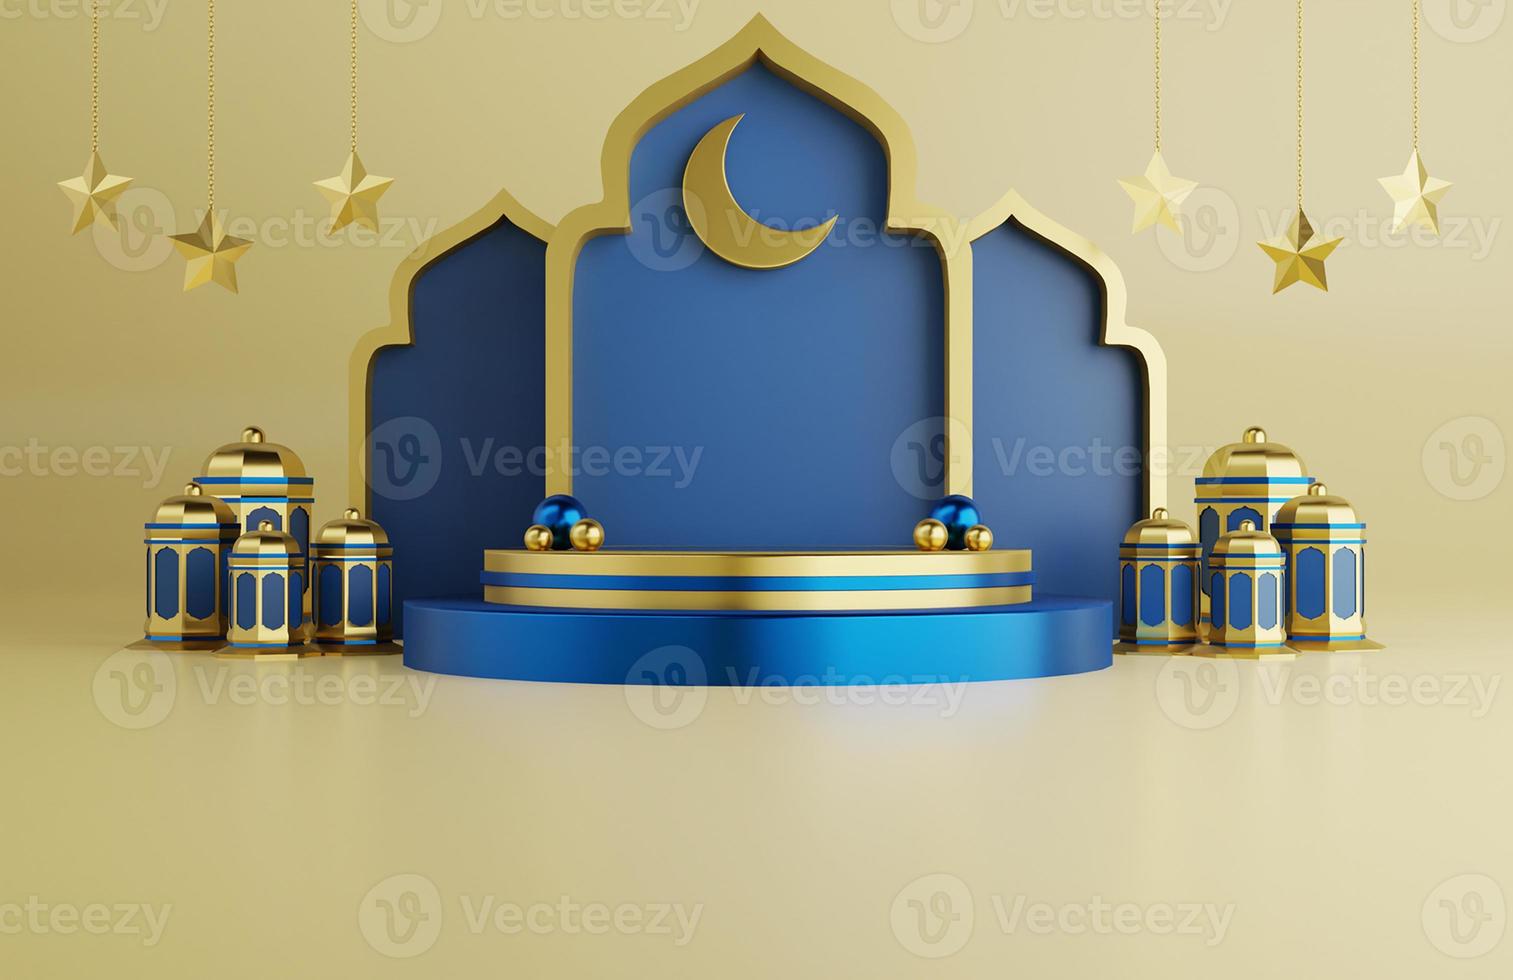 fond de voeux islamique ramadan avec étoile d'ornement de mosquée 3d et lanternes arabes photo